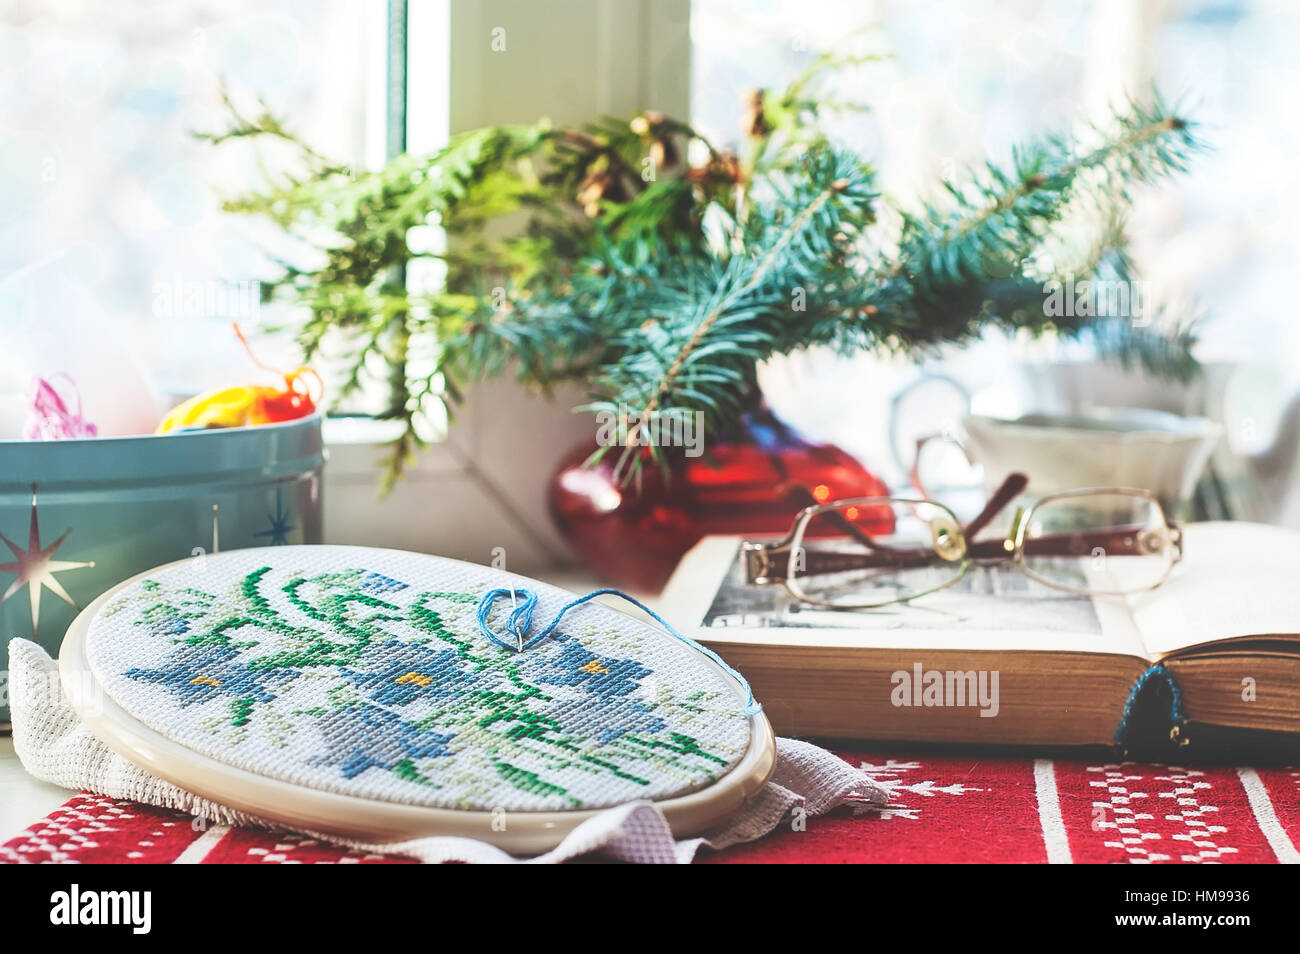 La vie encore d'hiver : hoop avec des fleurs brodées, livre ouvert, verres, théière et tasse, fils colorés dans la case et l'arbre de Noël dans un vase. Sélectionnez Banque D'Images